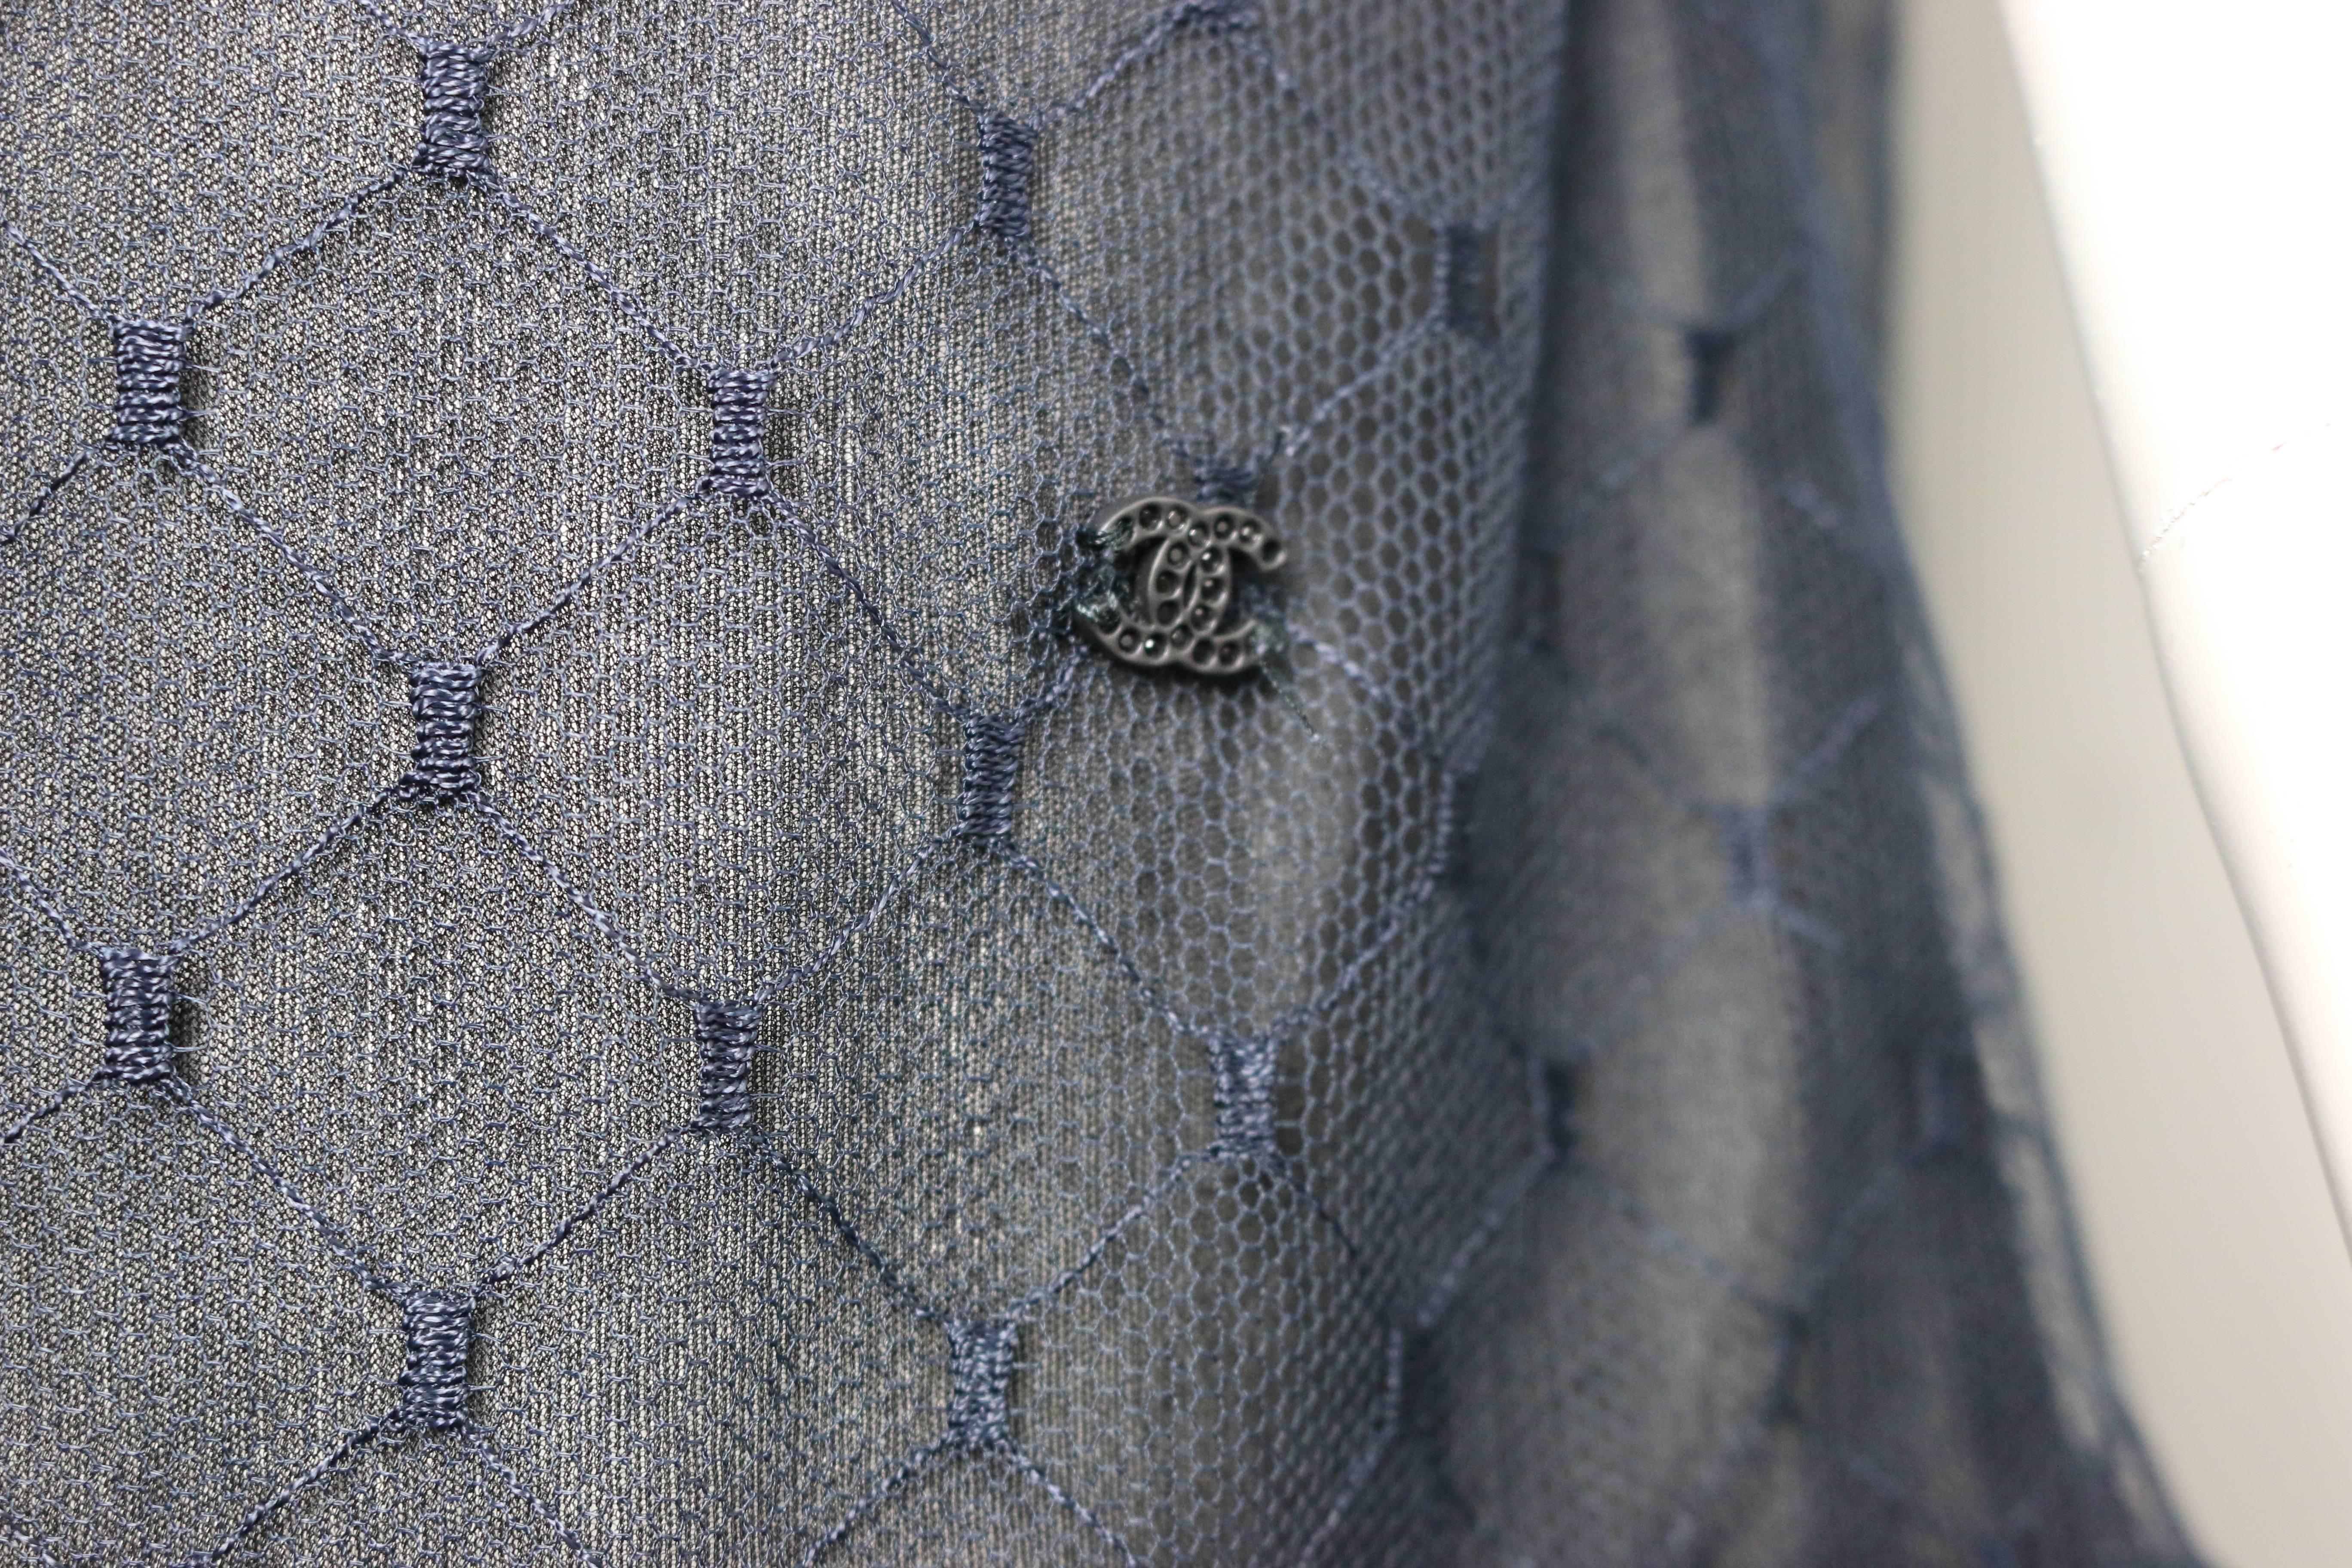 - Dieses wunderschöne marineblaue ärmellose Blusentop aus Spitze und Seide von Chanel ist ein echtes Sammlerstück. Mit geraffter und gekräuselter Vorderseite und satinblauer Paspelierung. Hinten durchsichtig, mit Seidenbandverschluss am Hals.  Ein